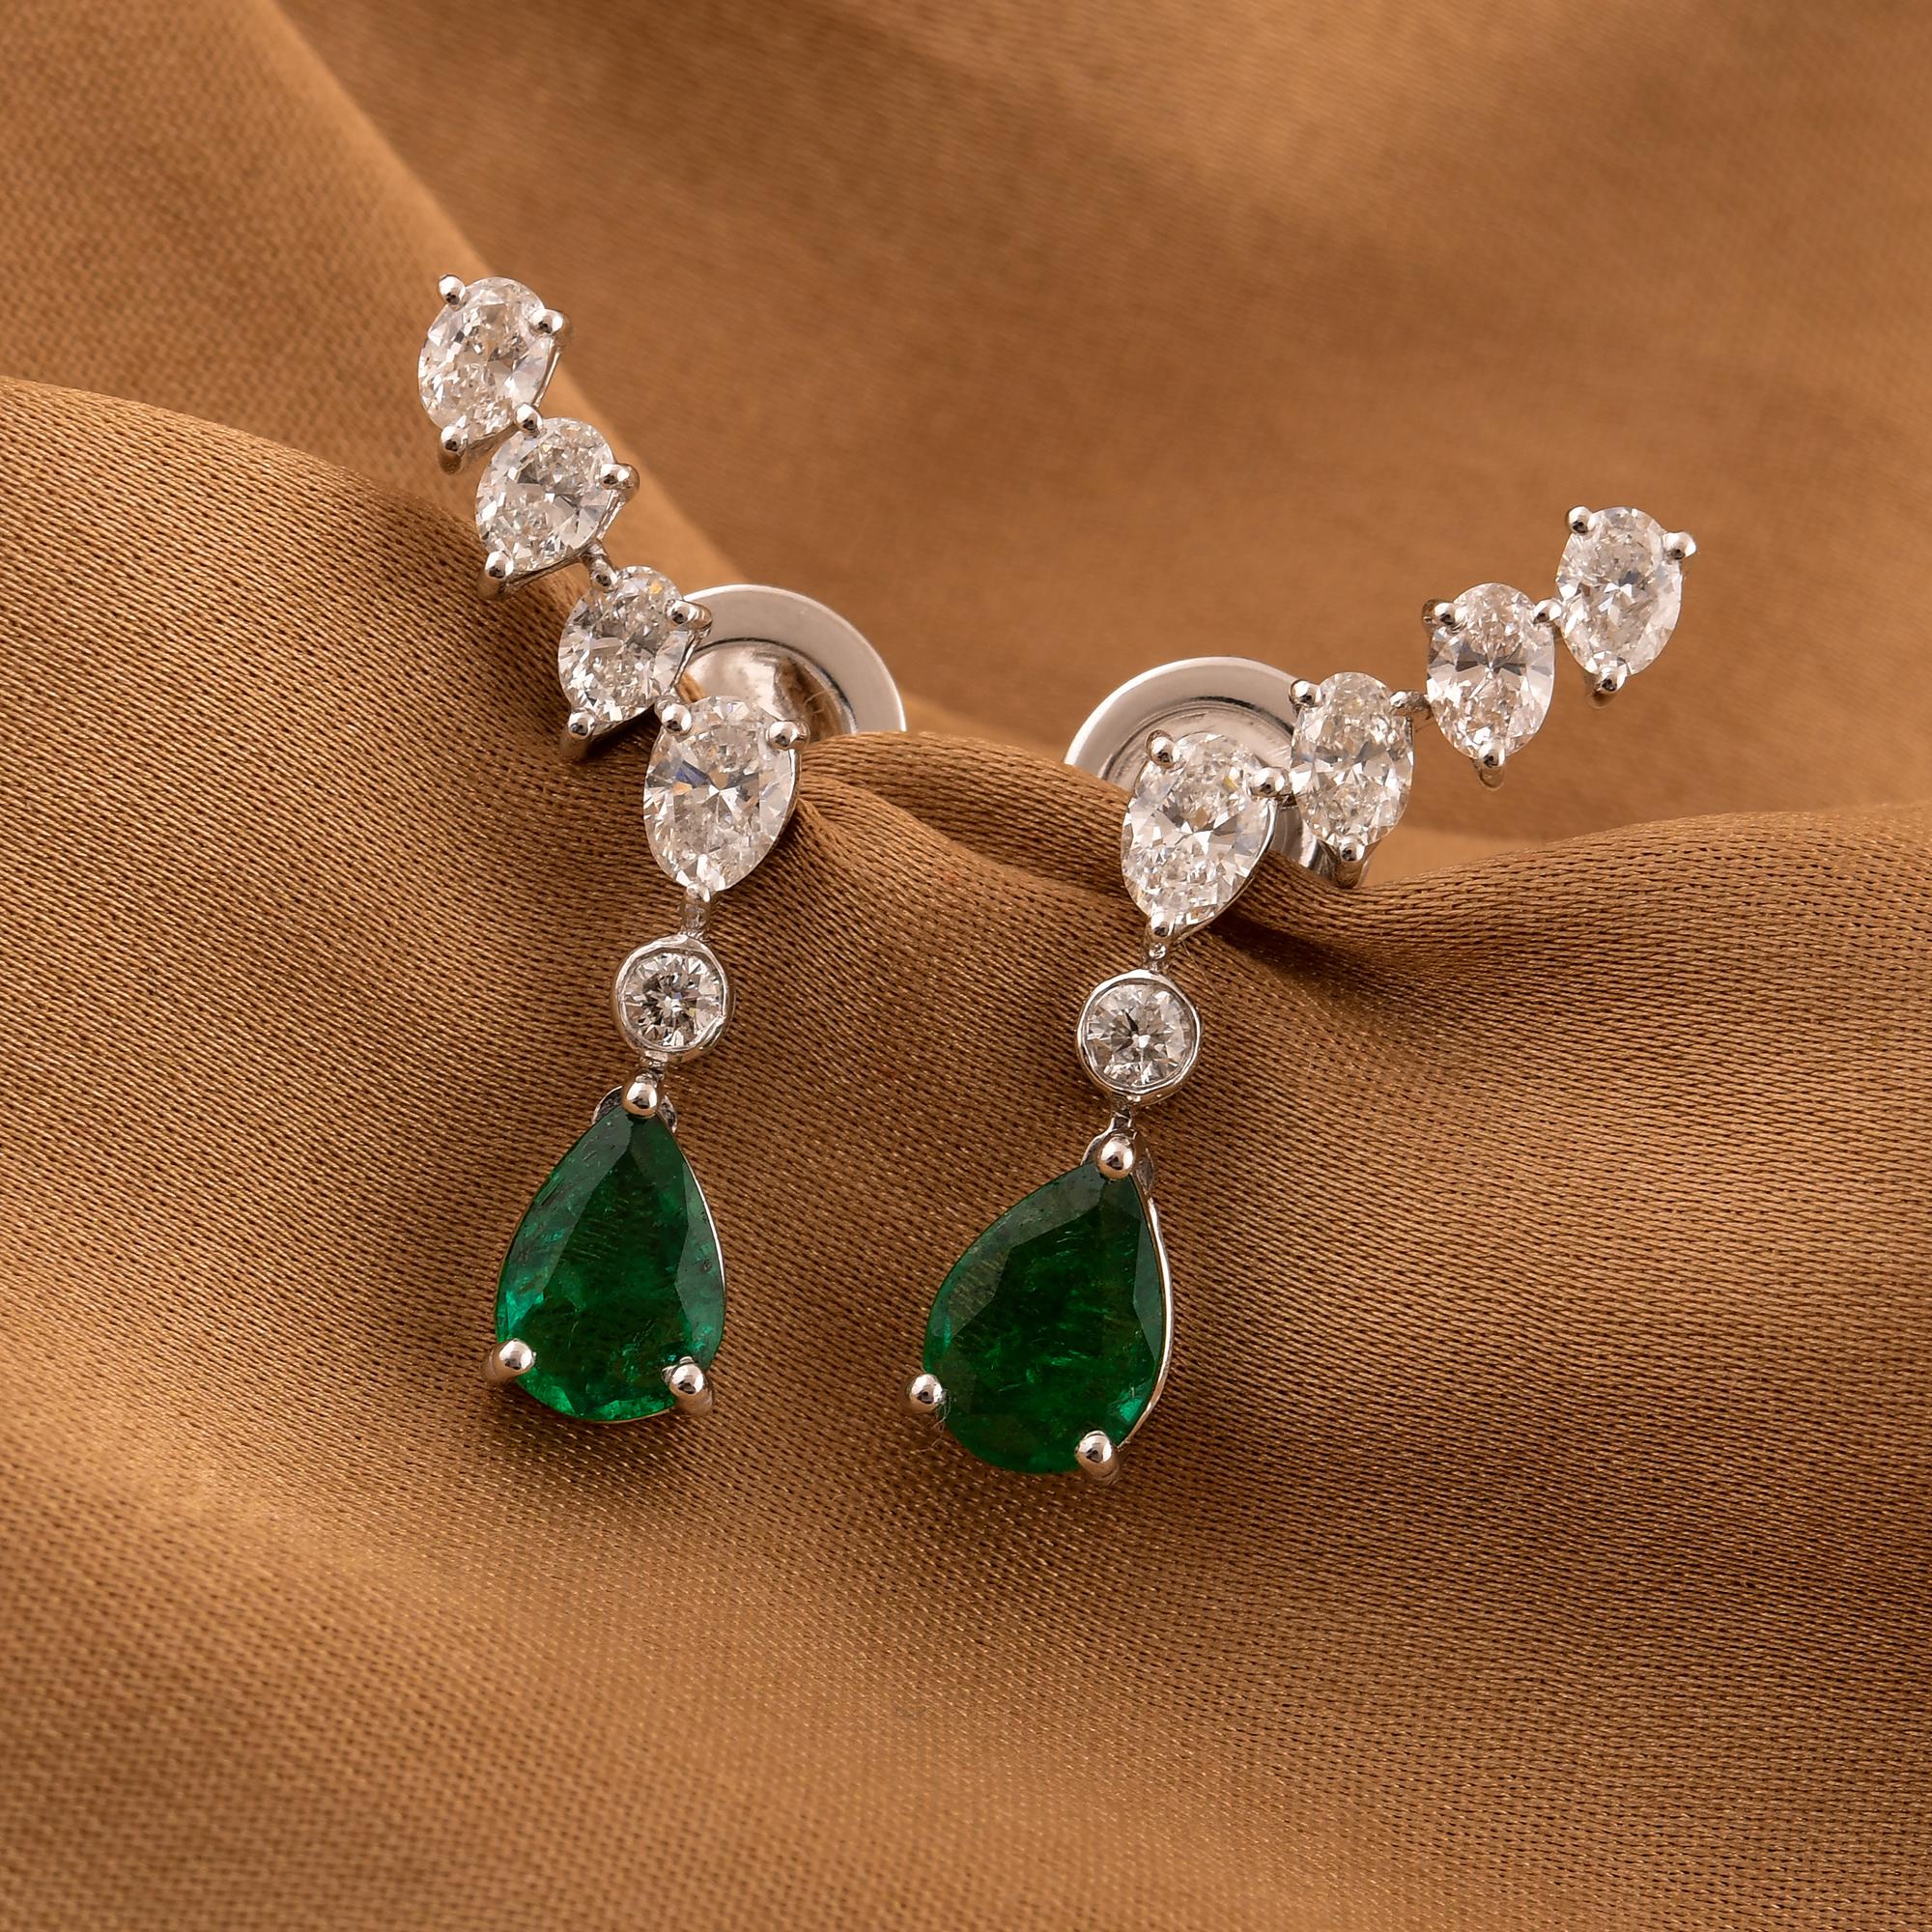 Pear Cut Zambian Emerald Ear Clamber Earrings Diamond 14 Karat White Gold Fine Jewelry For Sale